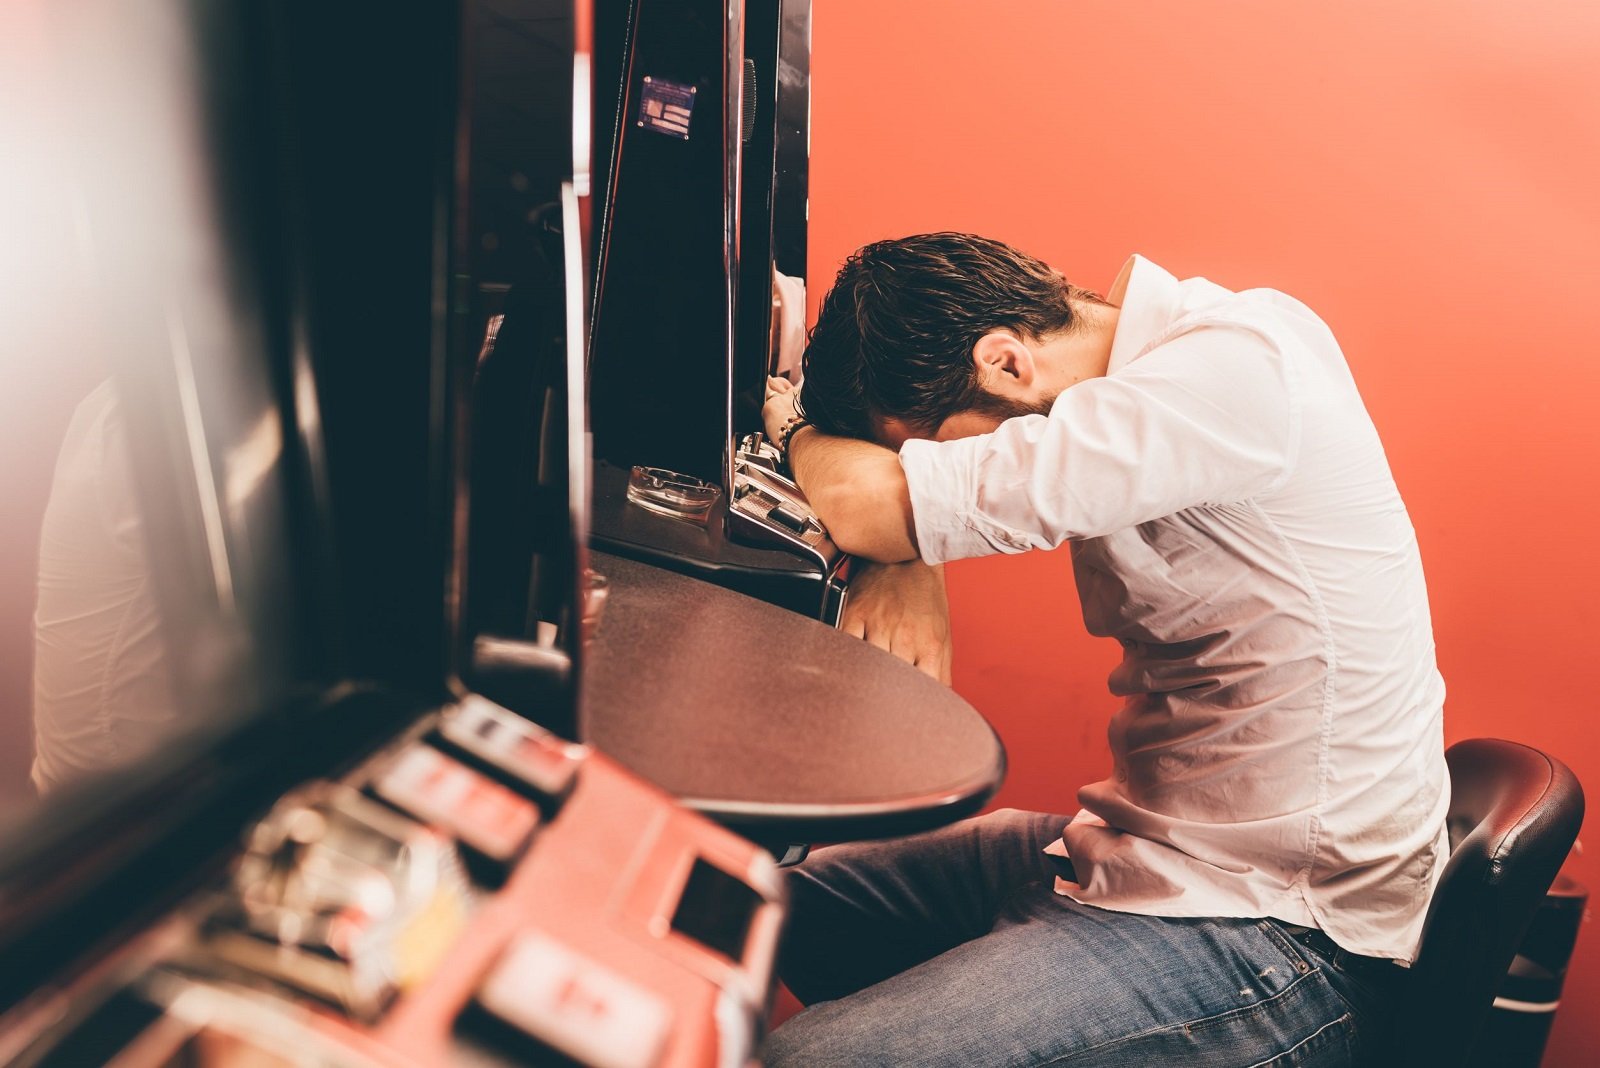 Mann am Spielautomaten stützt Kopf auf seine Arme